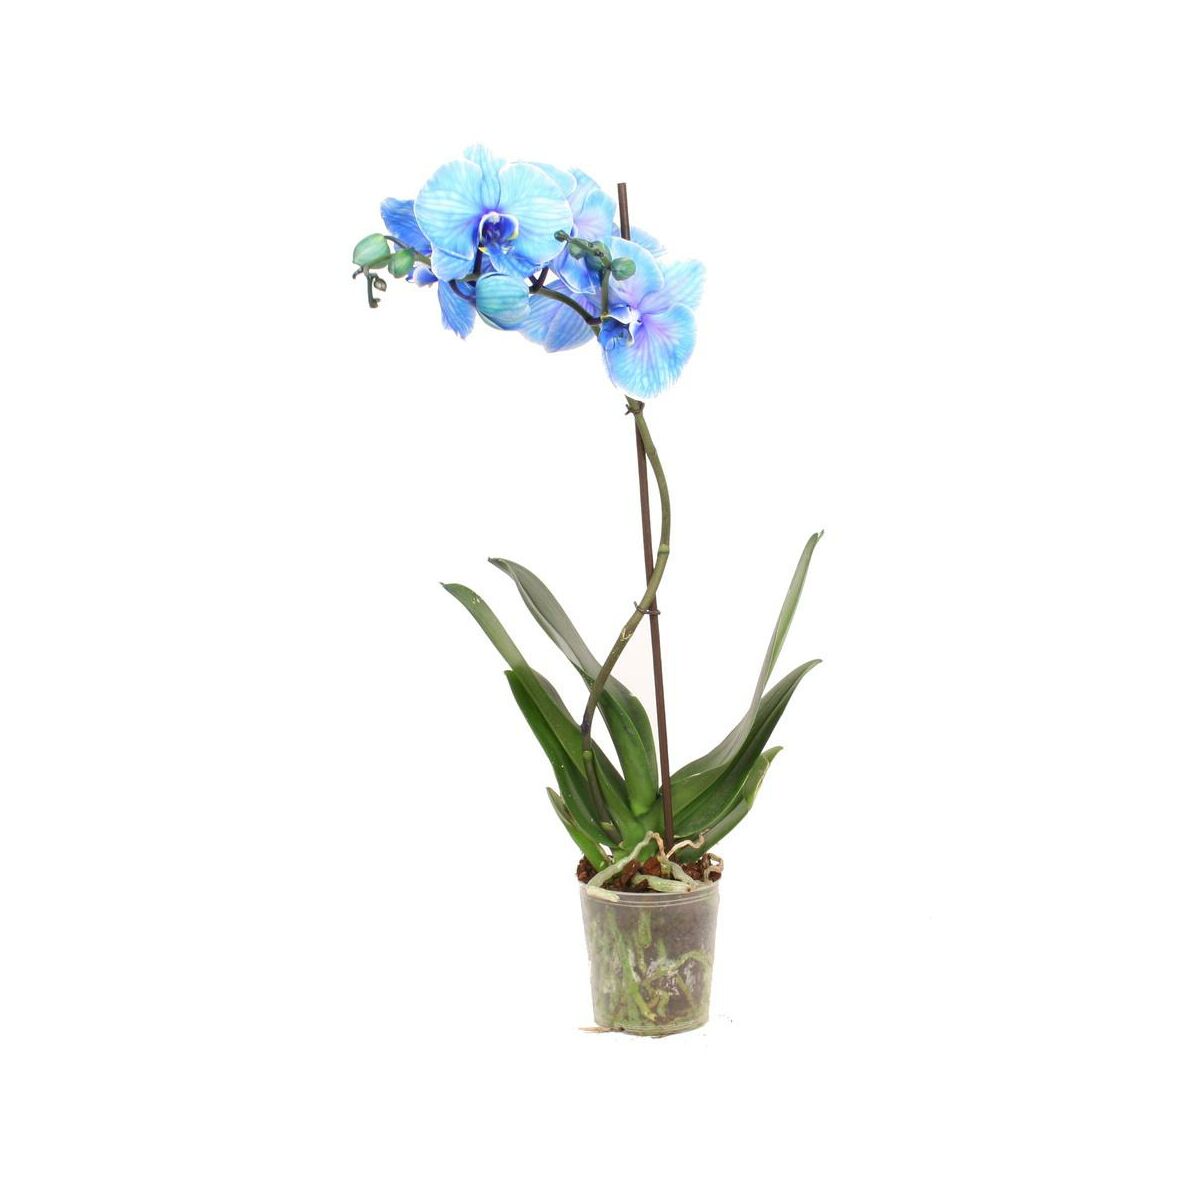 Storczyk Falenopsis Niebieski 1 Ped 50 70 Cm Rosliny Kwitnace W Atrakcyjnej Cenie W Sklepach Leroy Merlin